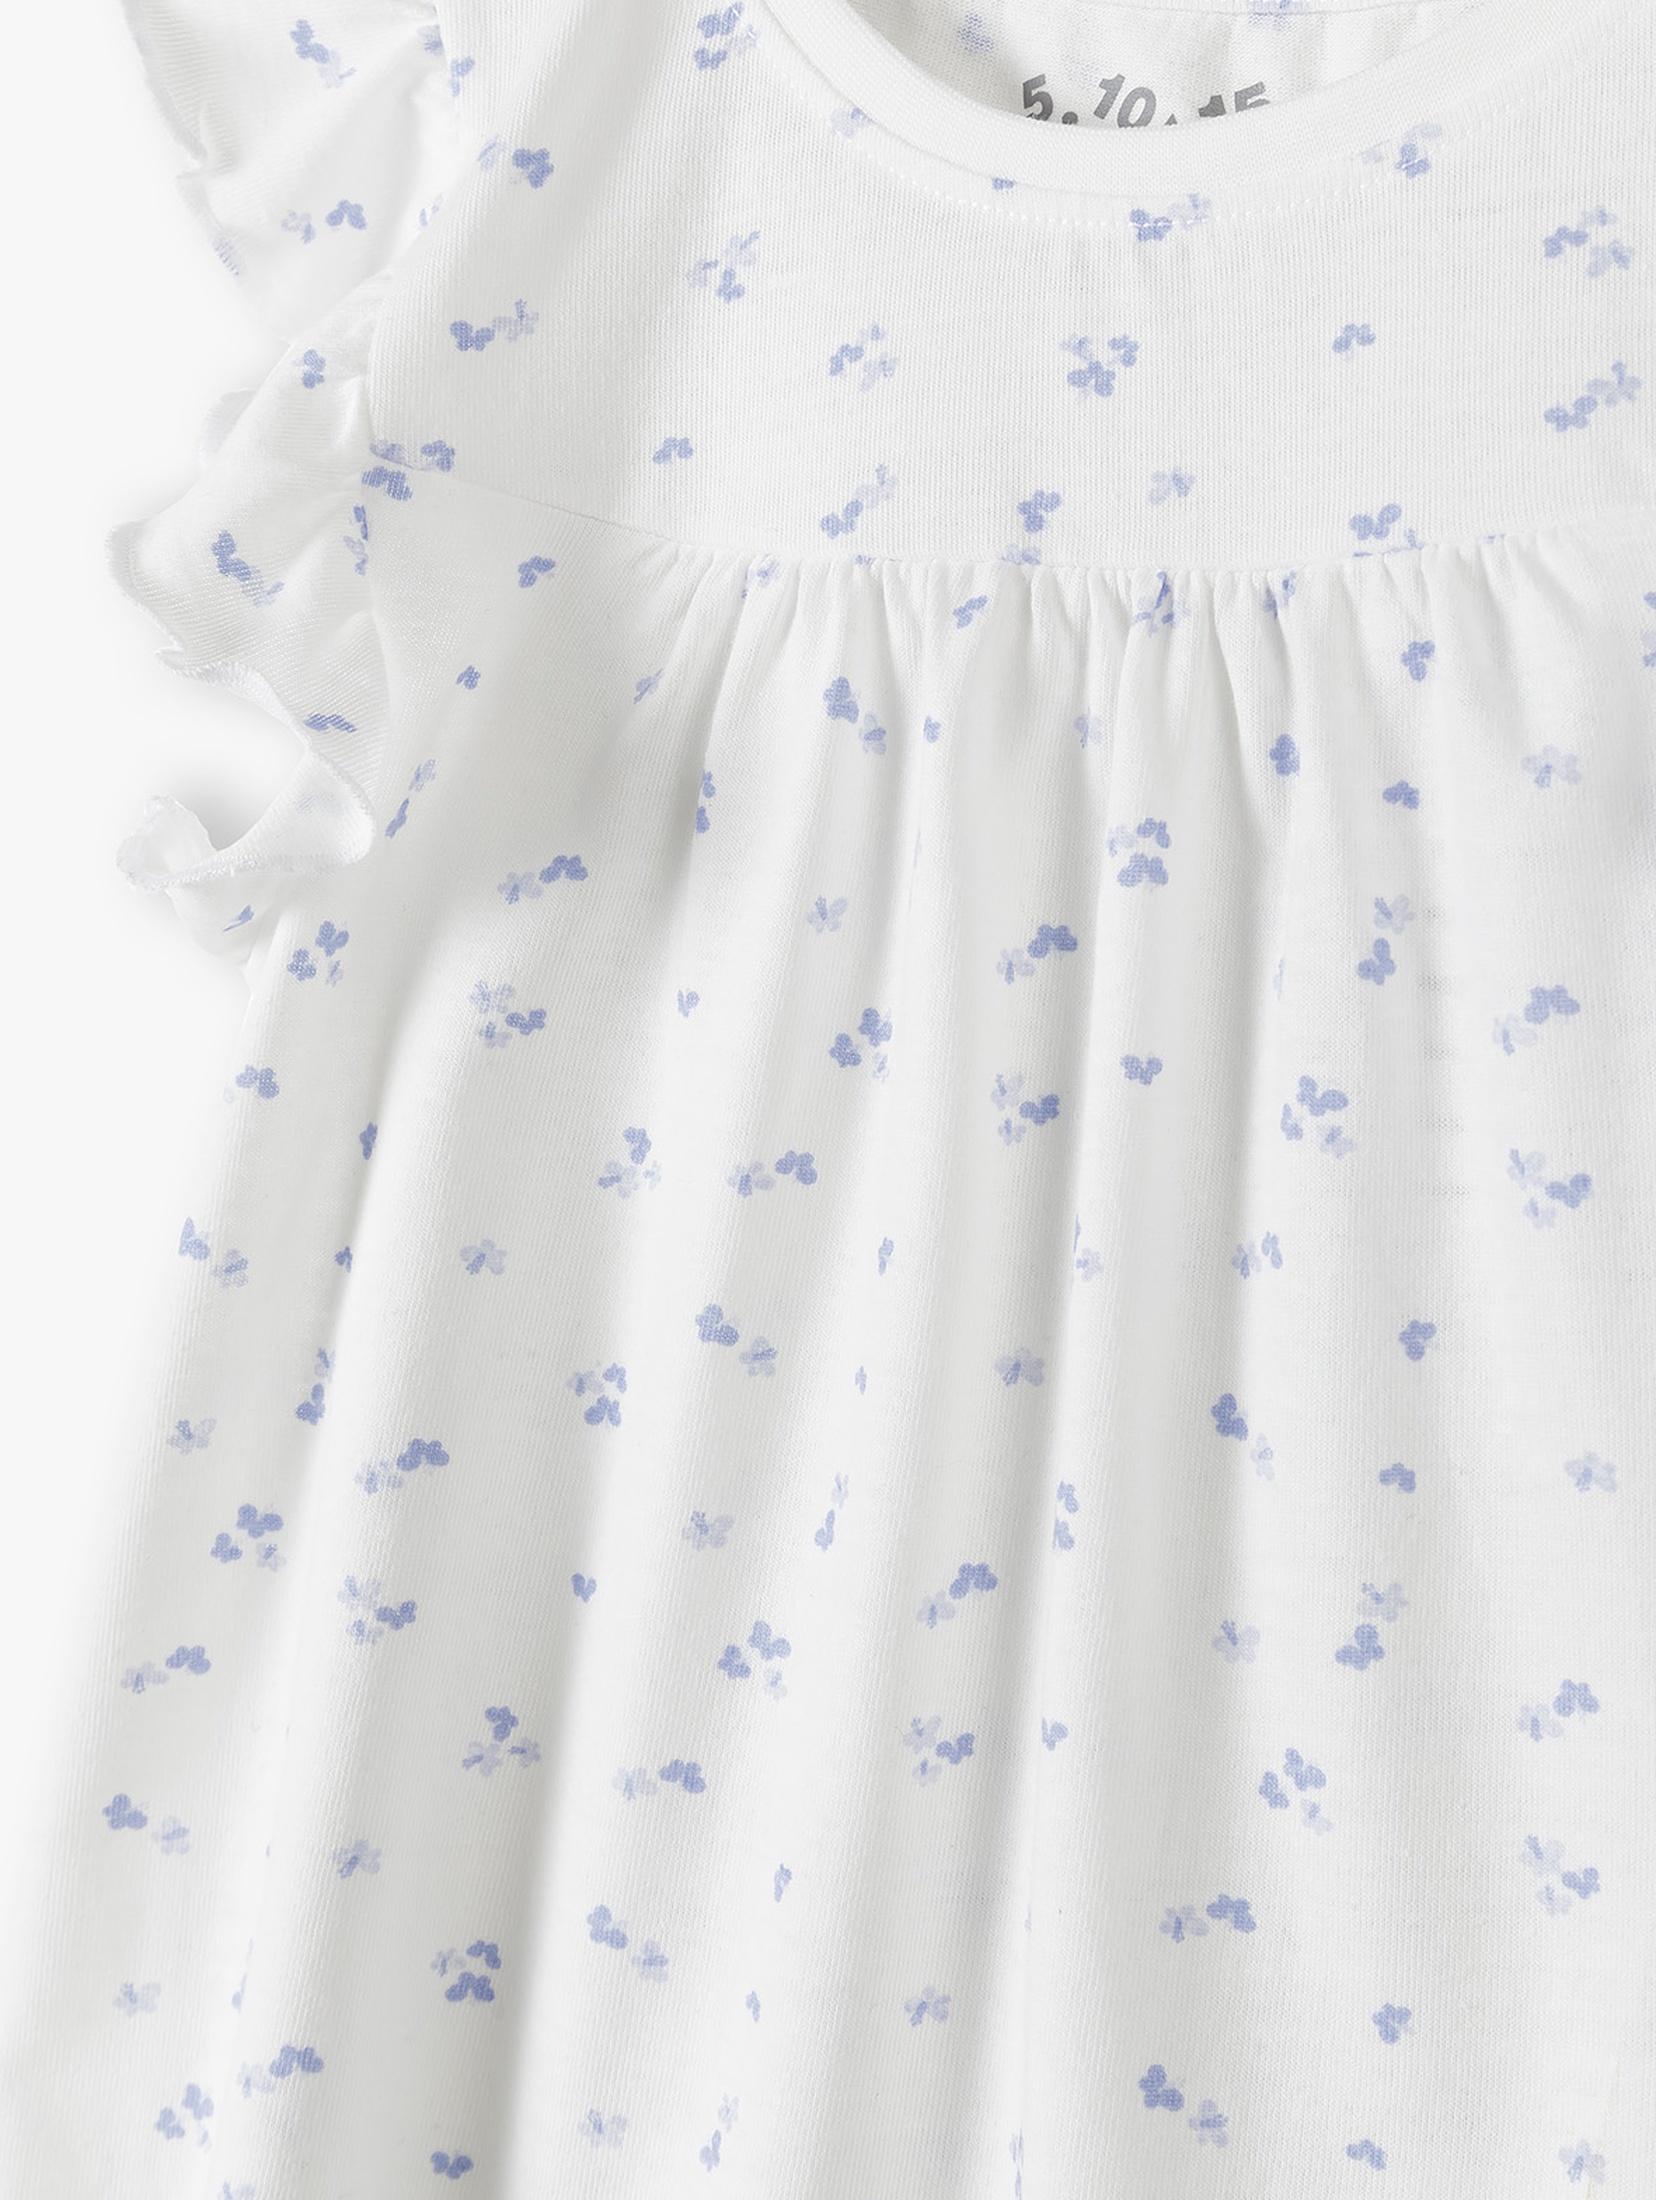 Piżama dziewczęca biała w kwiatki - 5.10.15.